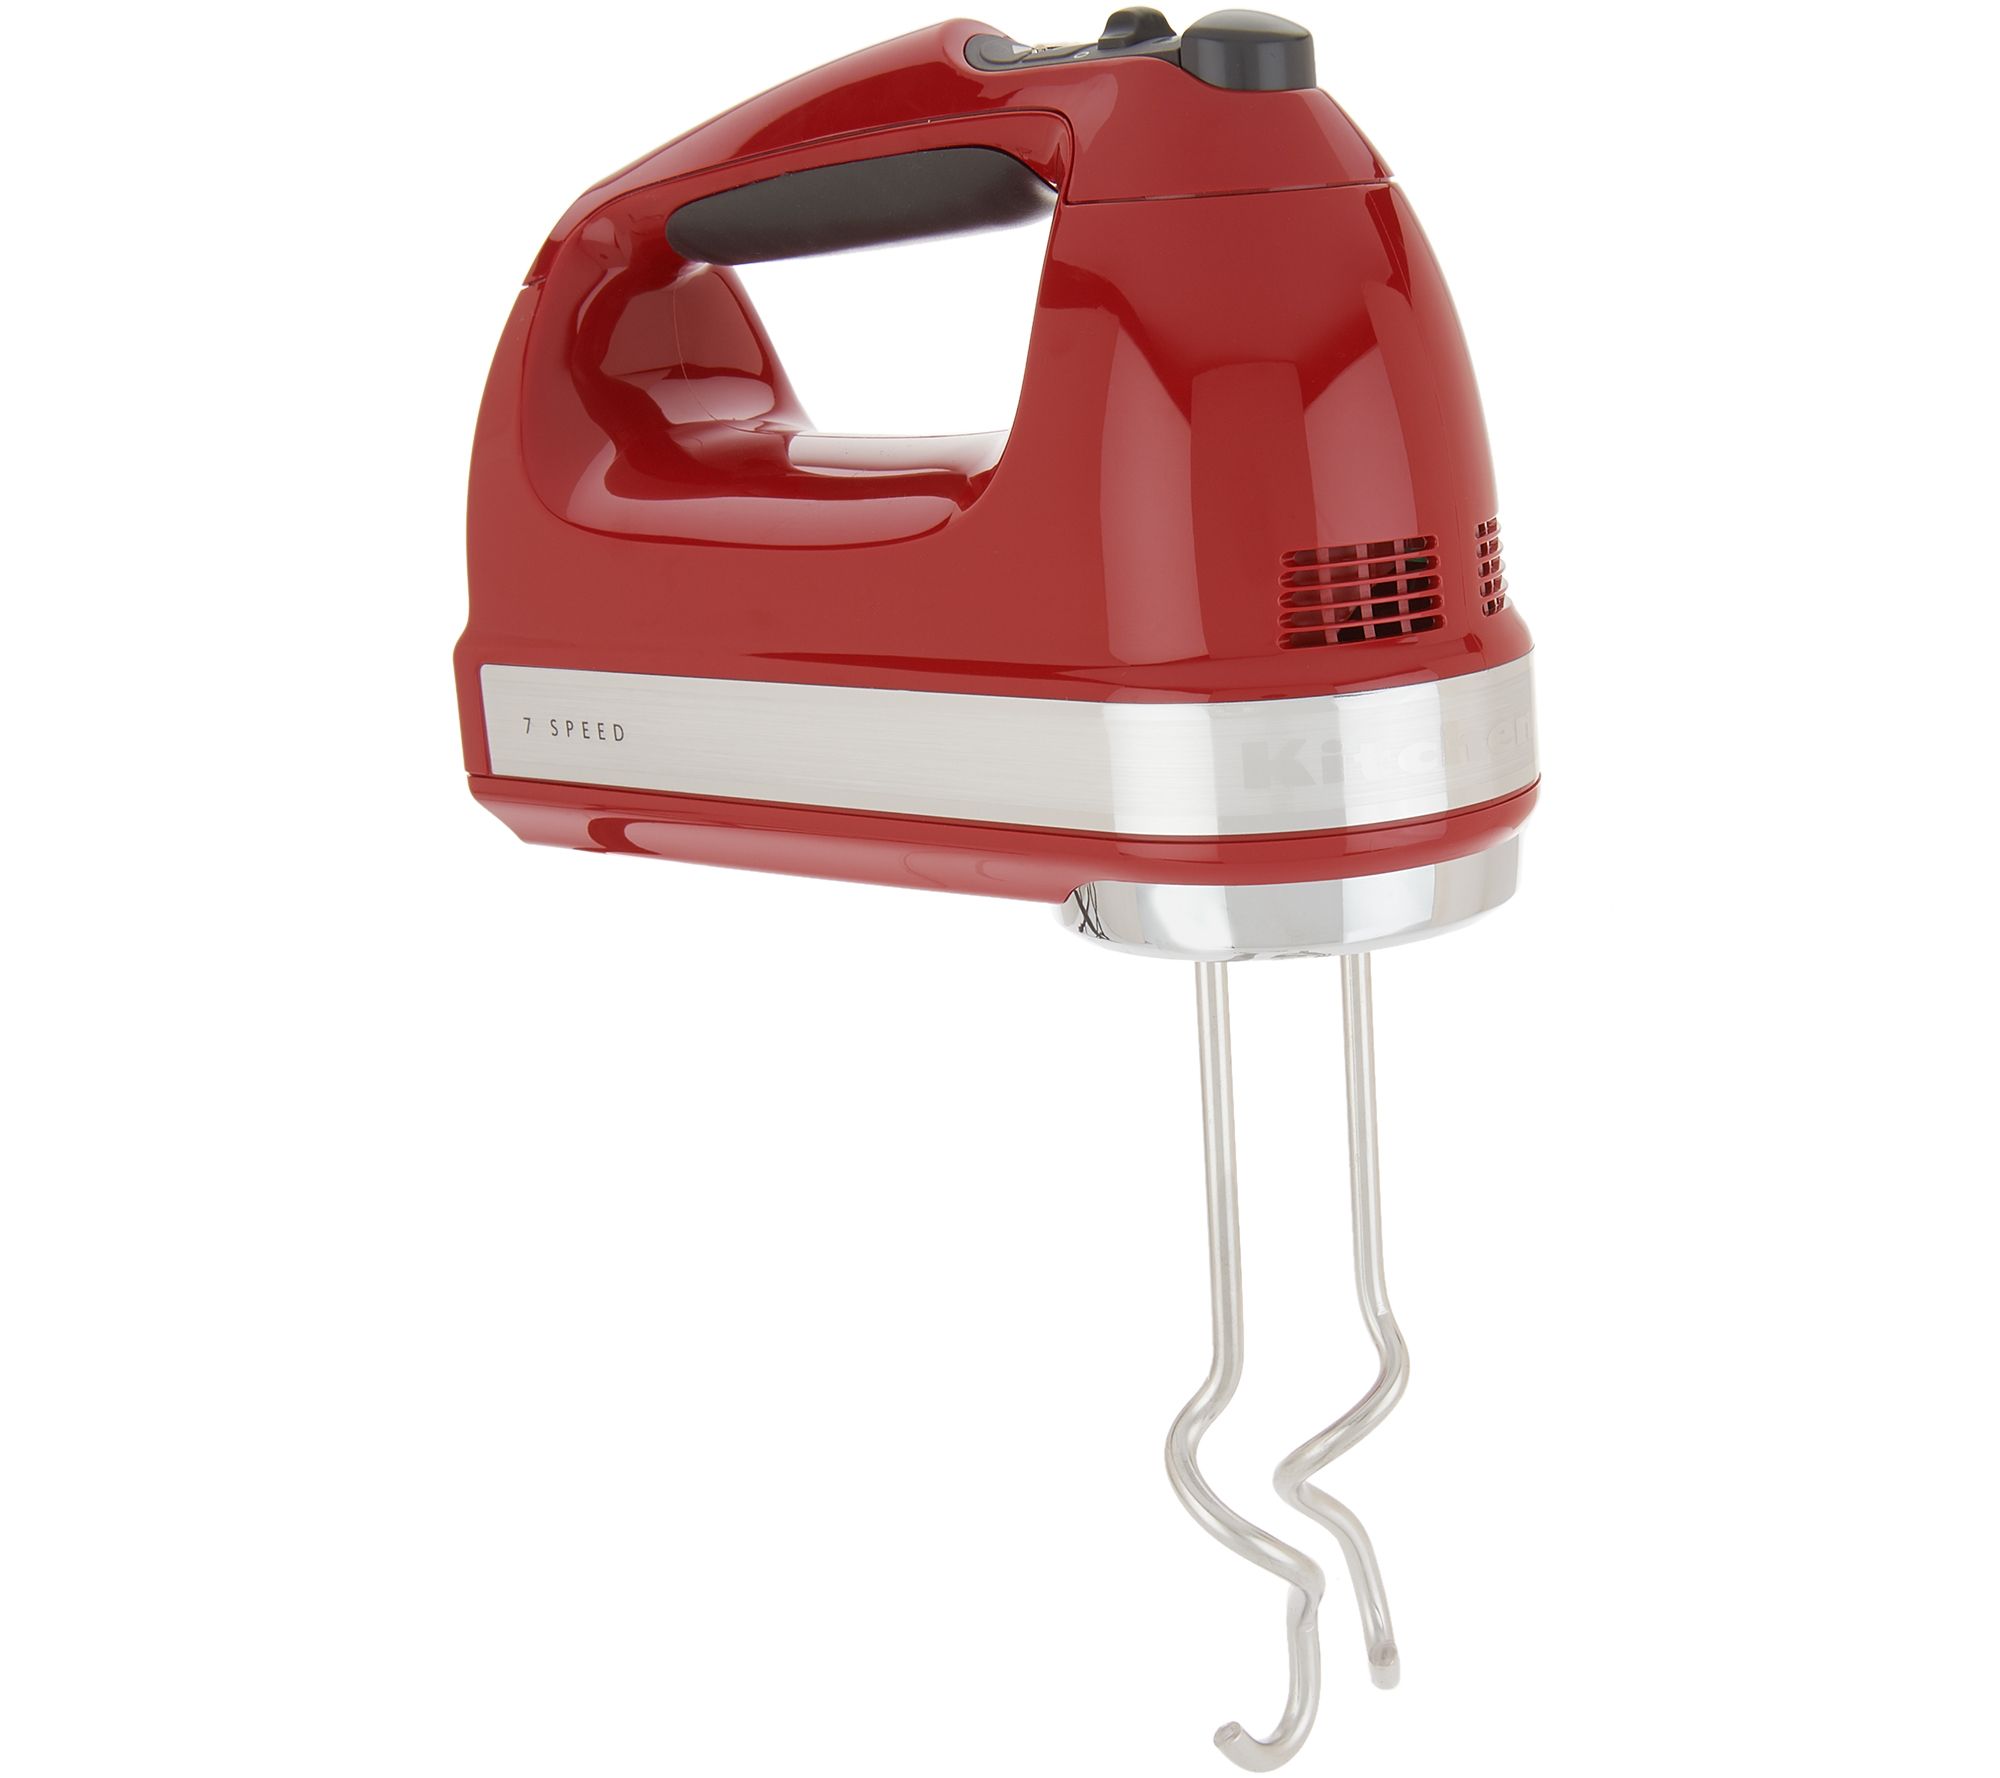 Kalorik® Cordless Electric Hand Mixer, Red